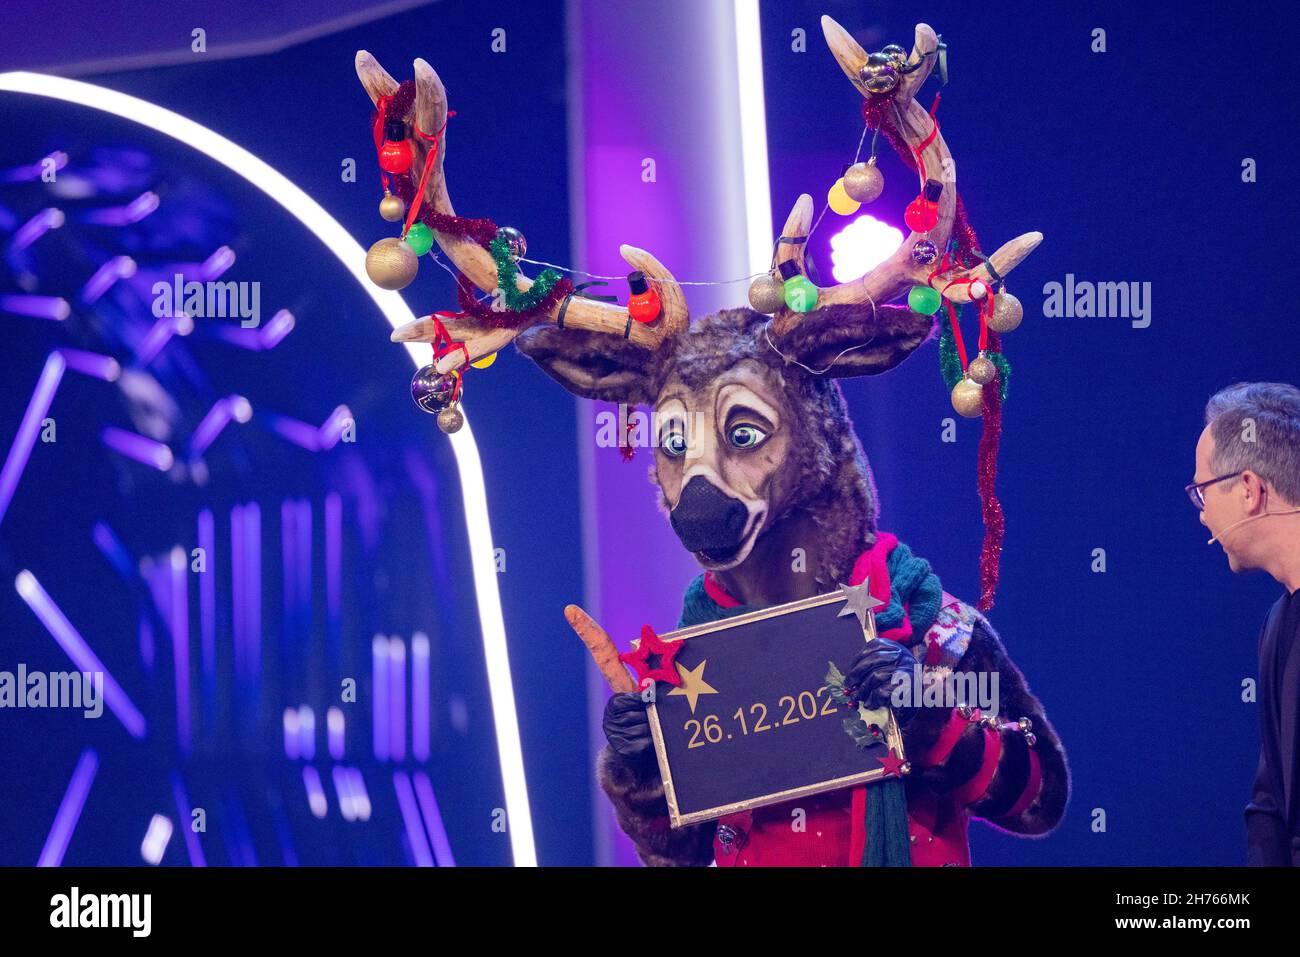 Colonia, Alemania. 20th Nov, 2021. Una figura de renos señala un espectáculo especial en el escenario del espectáculo de ProSieben 'The Masked Singer'. Crédito: Rolf Vennenbernd/dpa/Alamy Live News Foto de stock